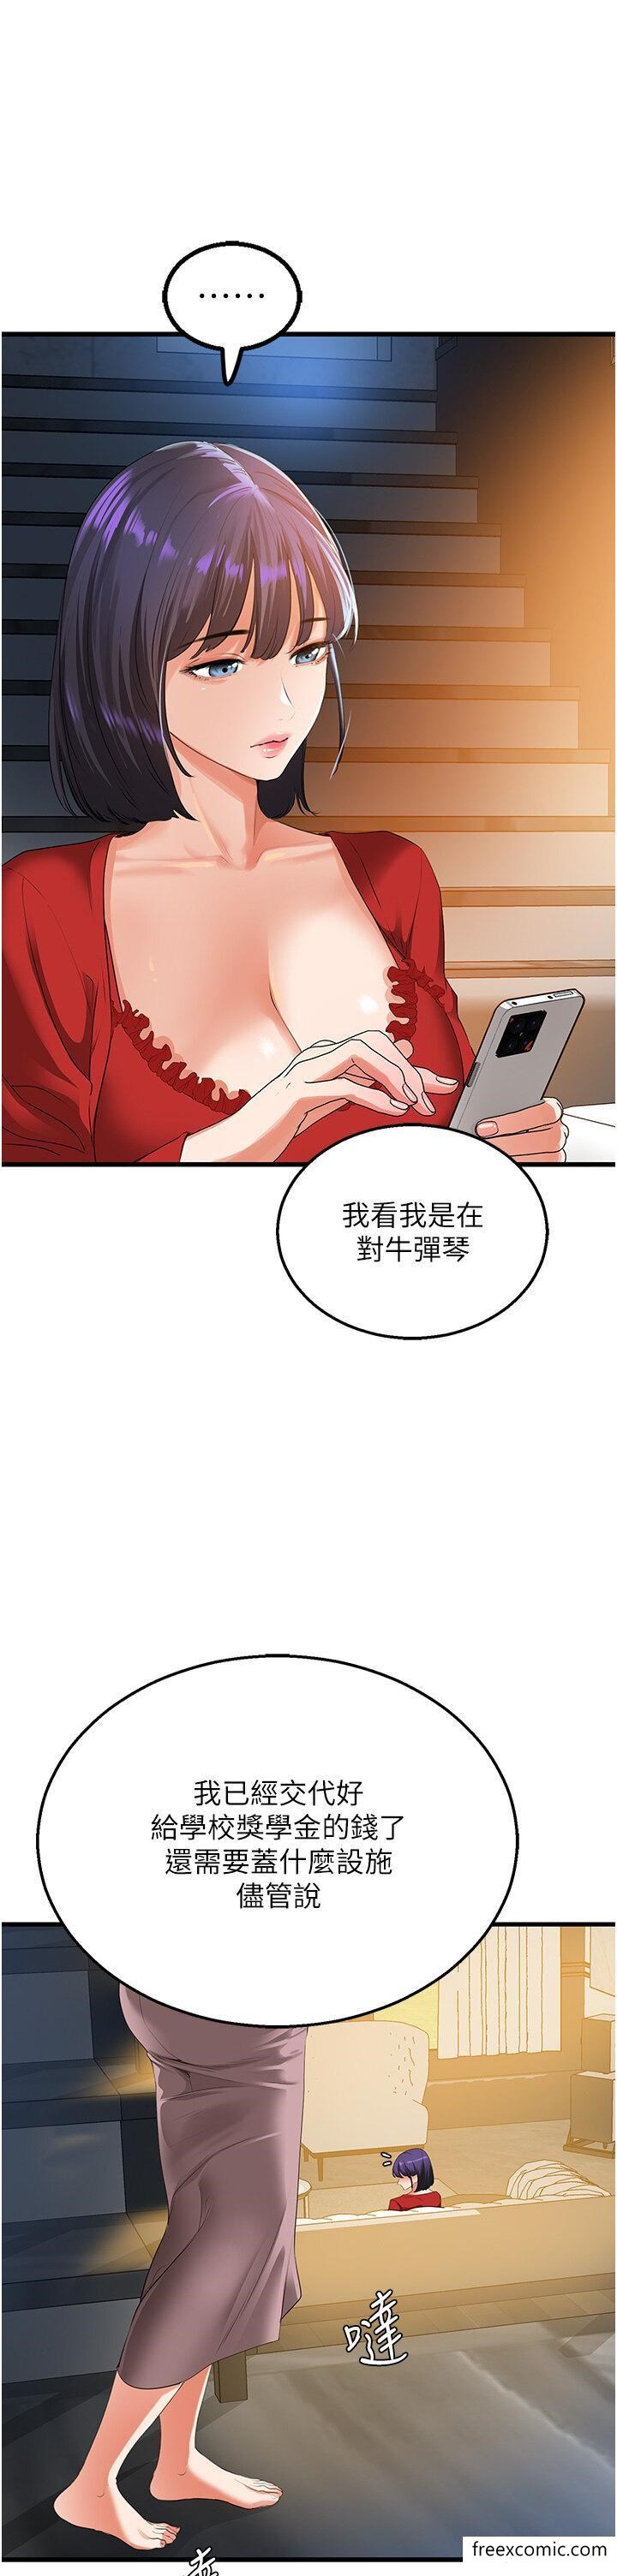 韩国漫画地表最屌卧底干员韩漫_地表最屌卧底干员-第5话-适合撩妹的发春期在线免费阅读-韩国漫画-第38张图片